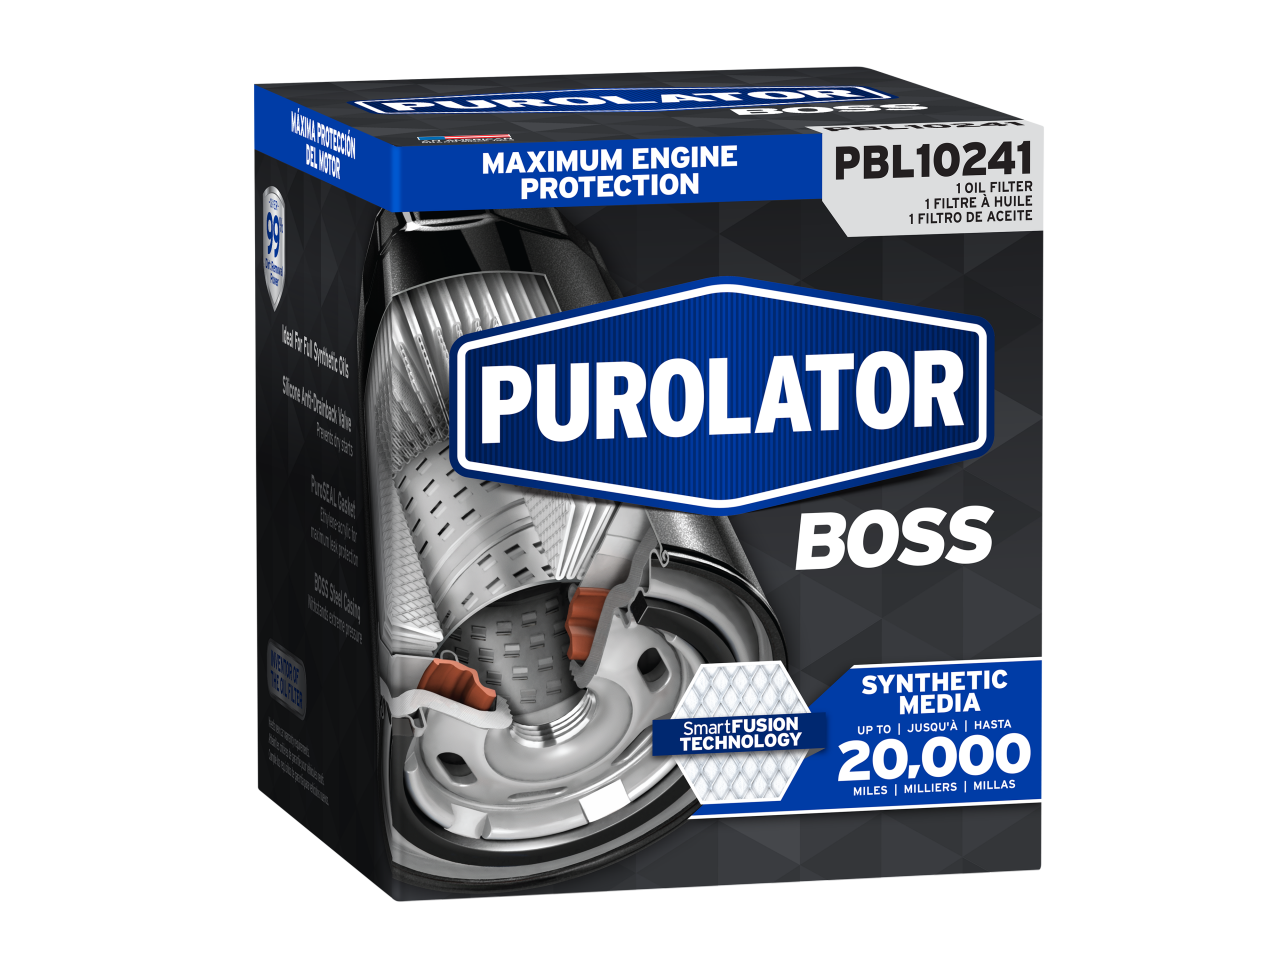 Les filtres à huile PurolatorBOSS Premium offrent une protection maximale du moteur pour jusqu’à 15 000 milles.